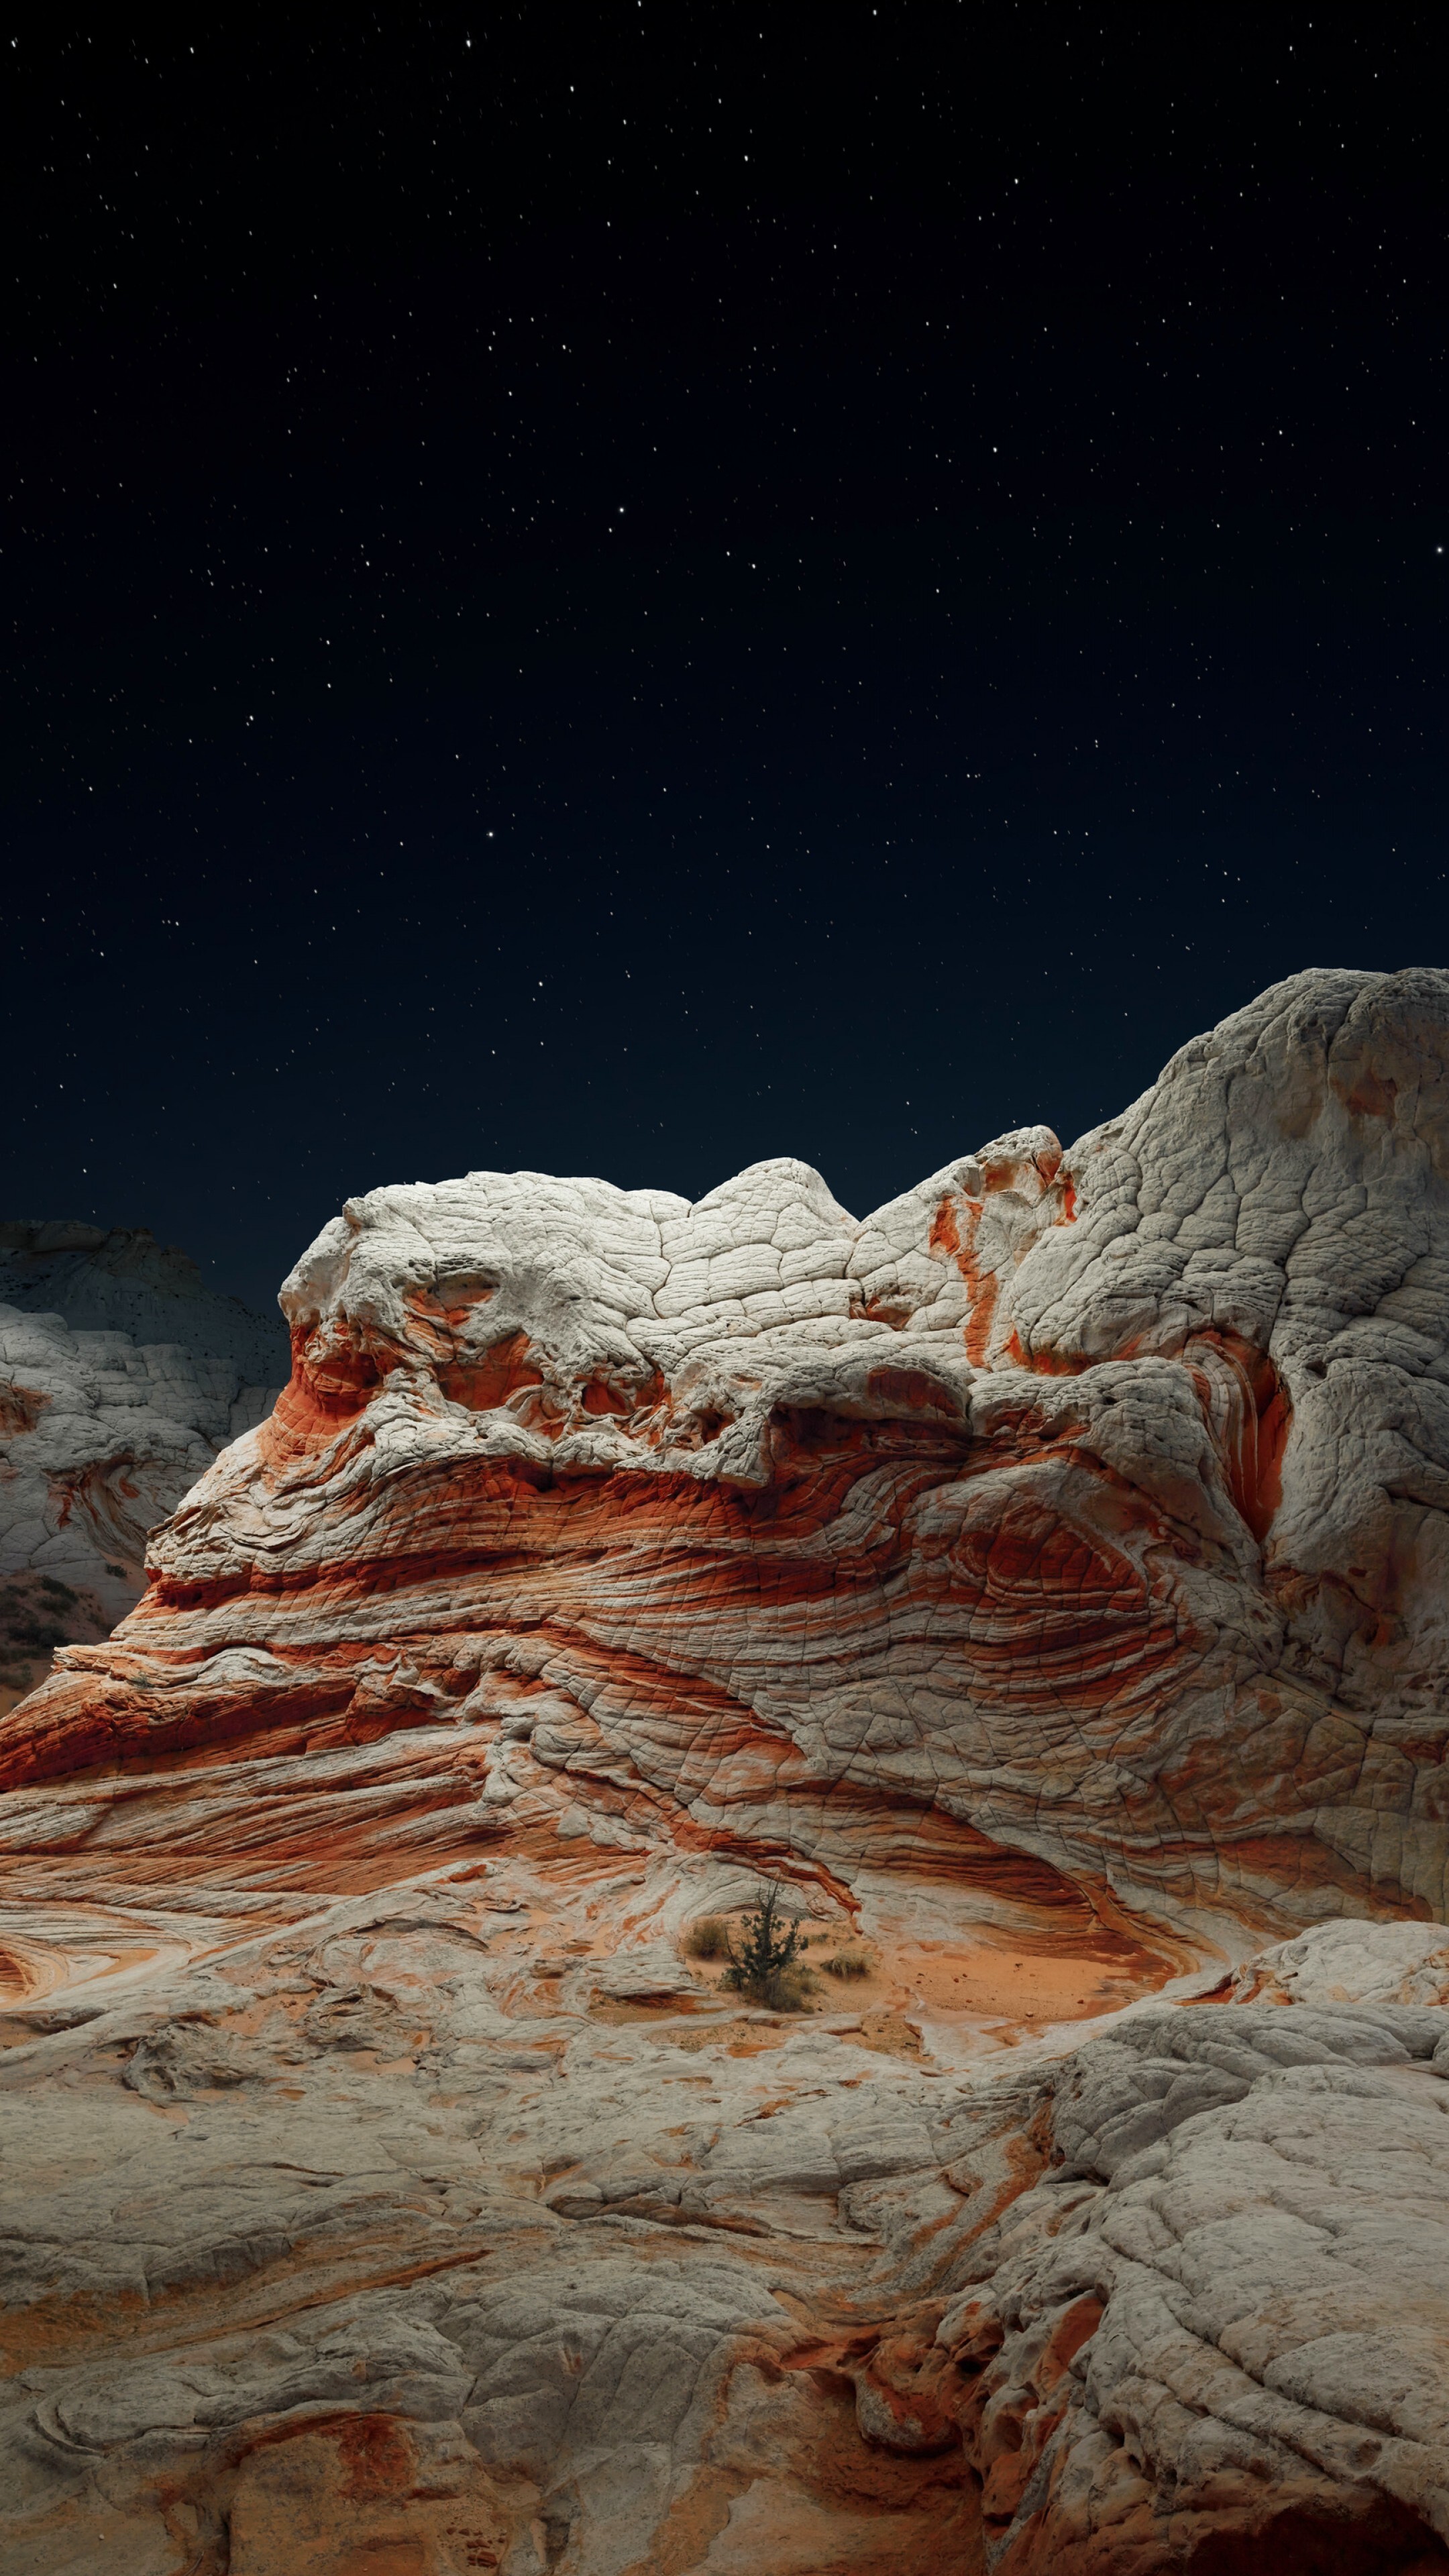 Geology: Desert valley at night, Boulders, Rock fragments, A desert surface. 2160x3840 4K Wallpaper.